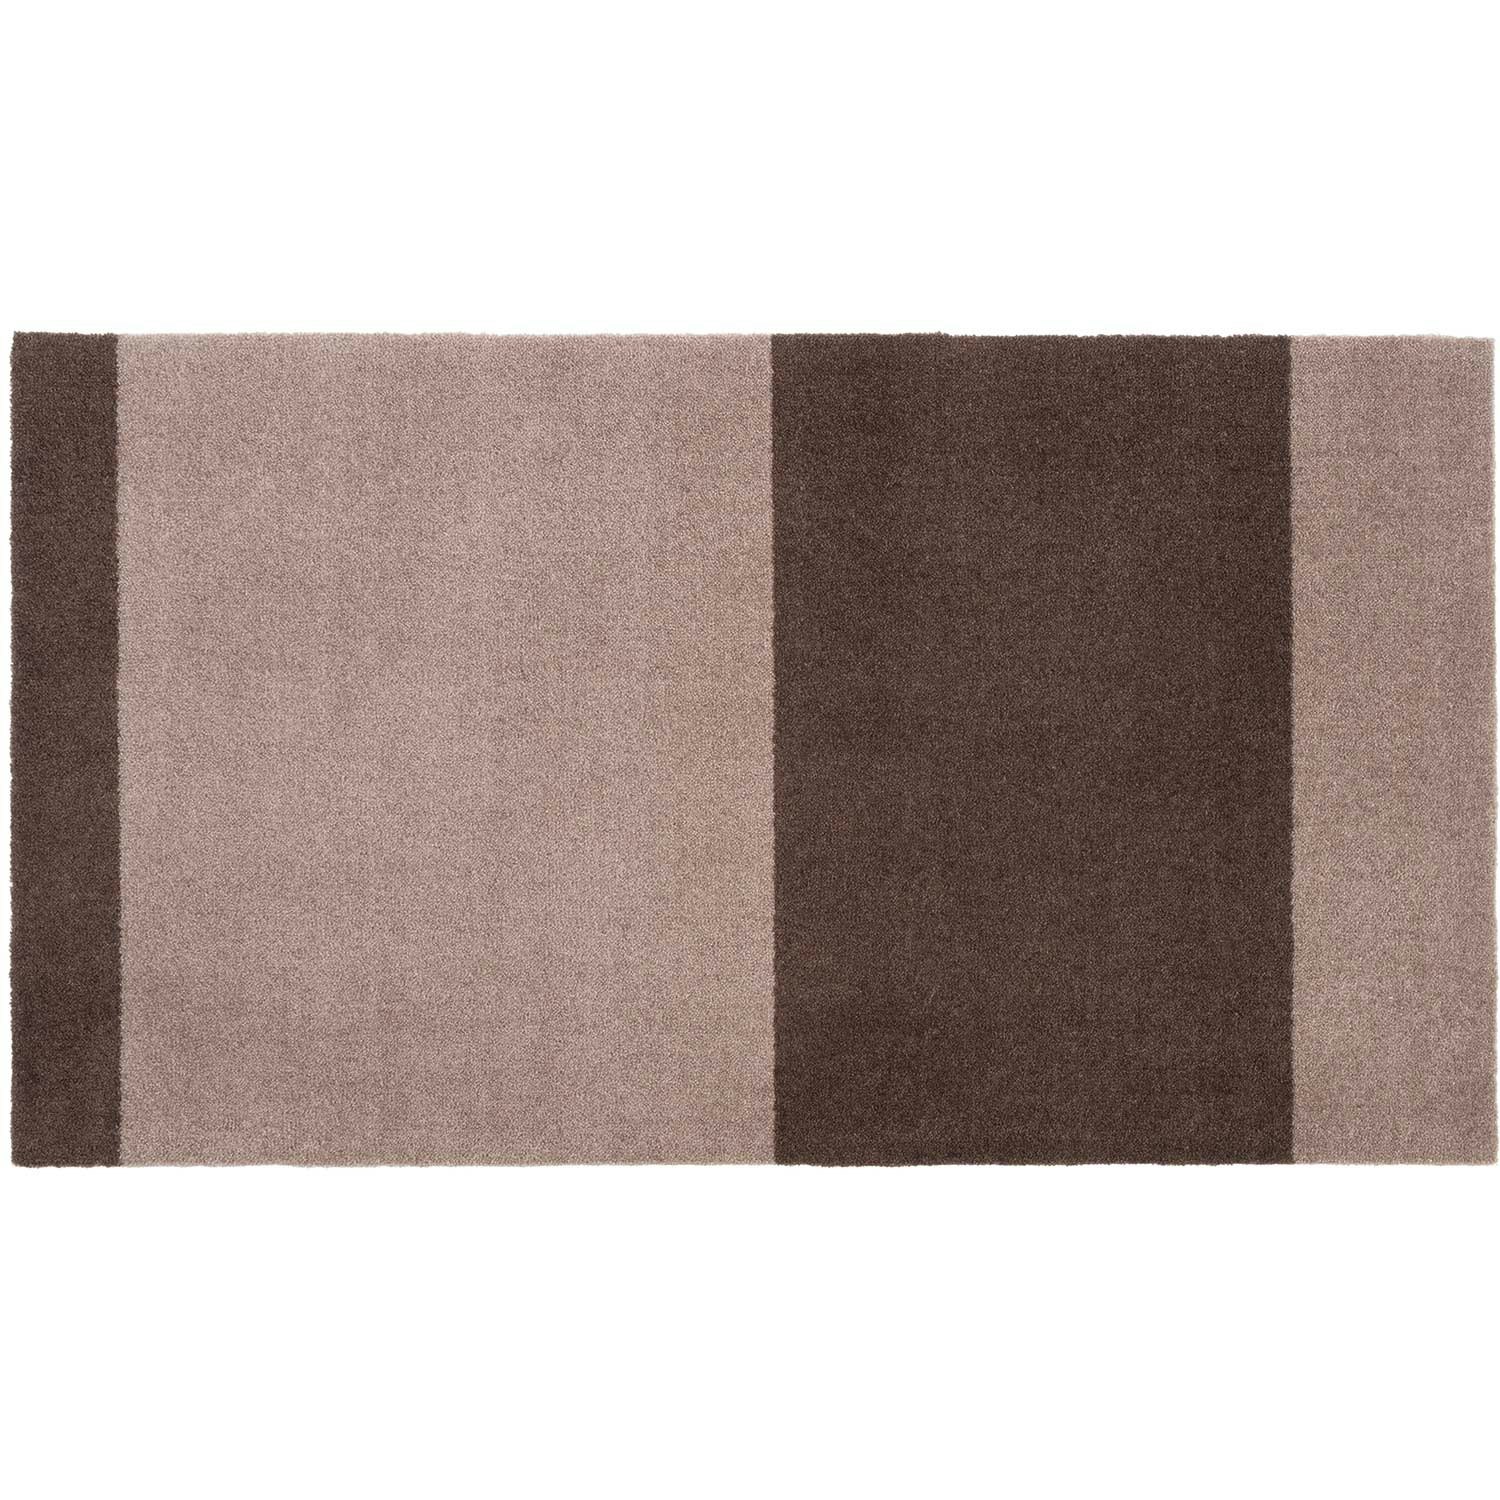 Puur Gevestigde theorie Ten einde raad Stripes Rug Sand / Brown, 67x120 cm - Tica Copenhagen @ RoyalDesign